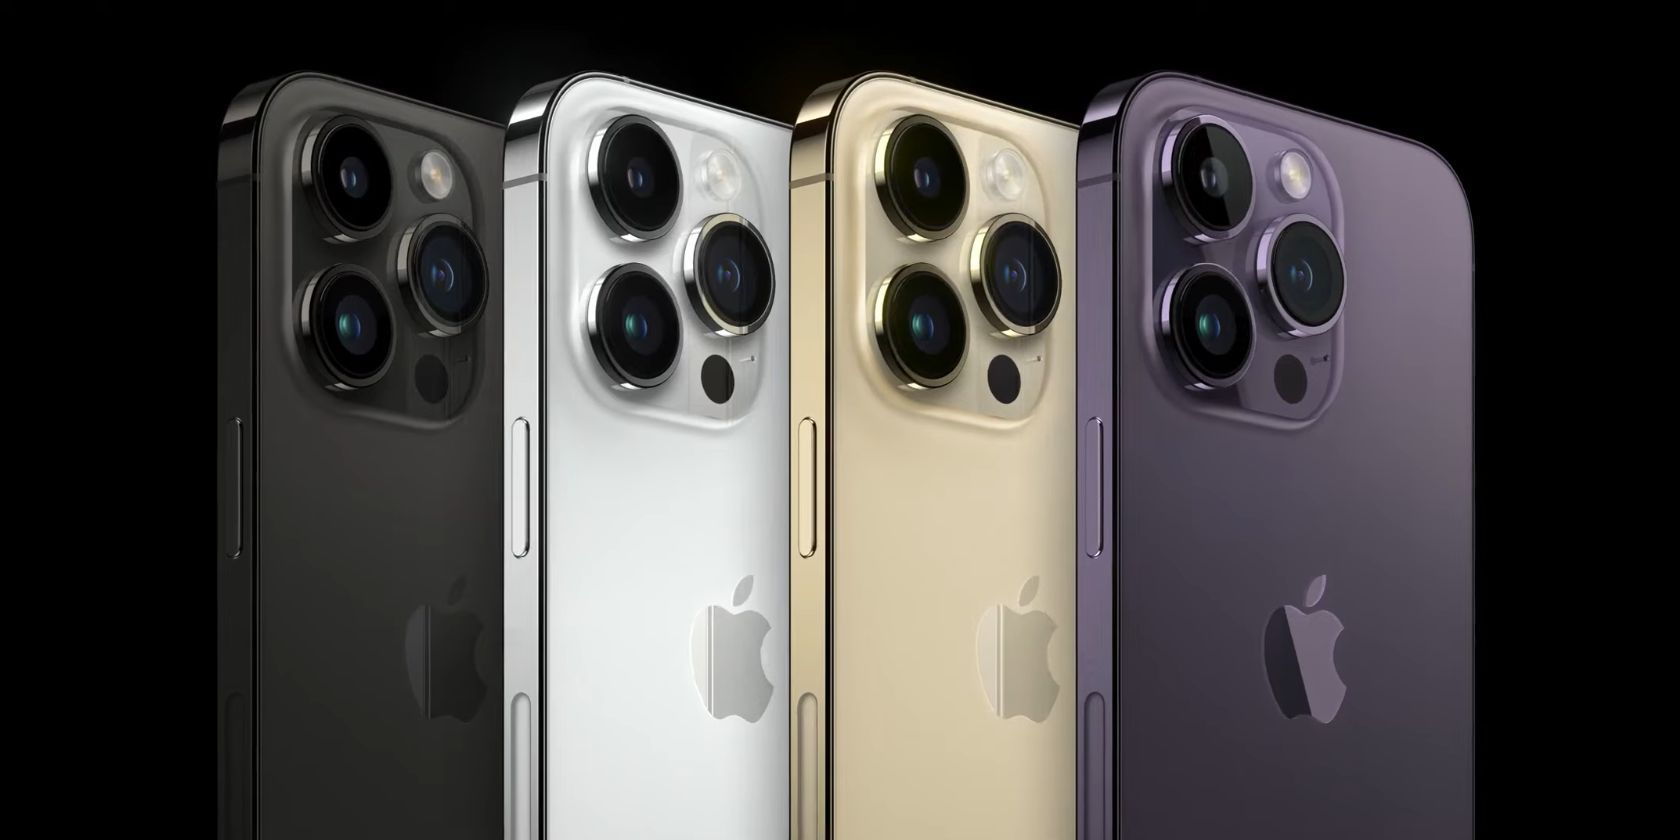 todas as cores do iphone 14 pro e pro max: preto espacial, prata, dourado, roxo profundo